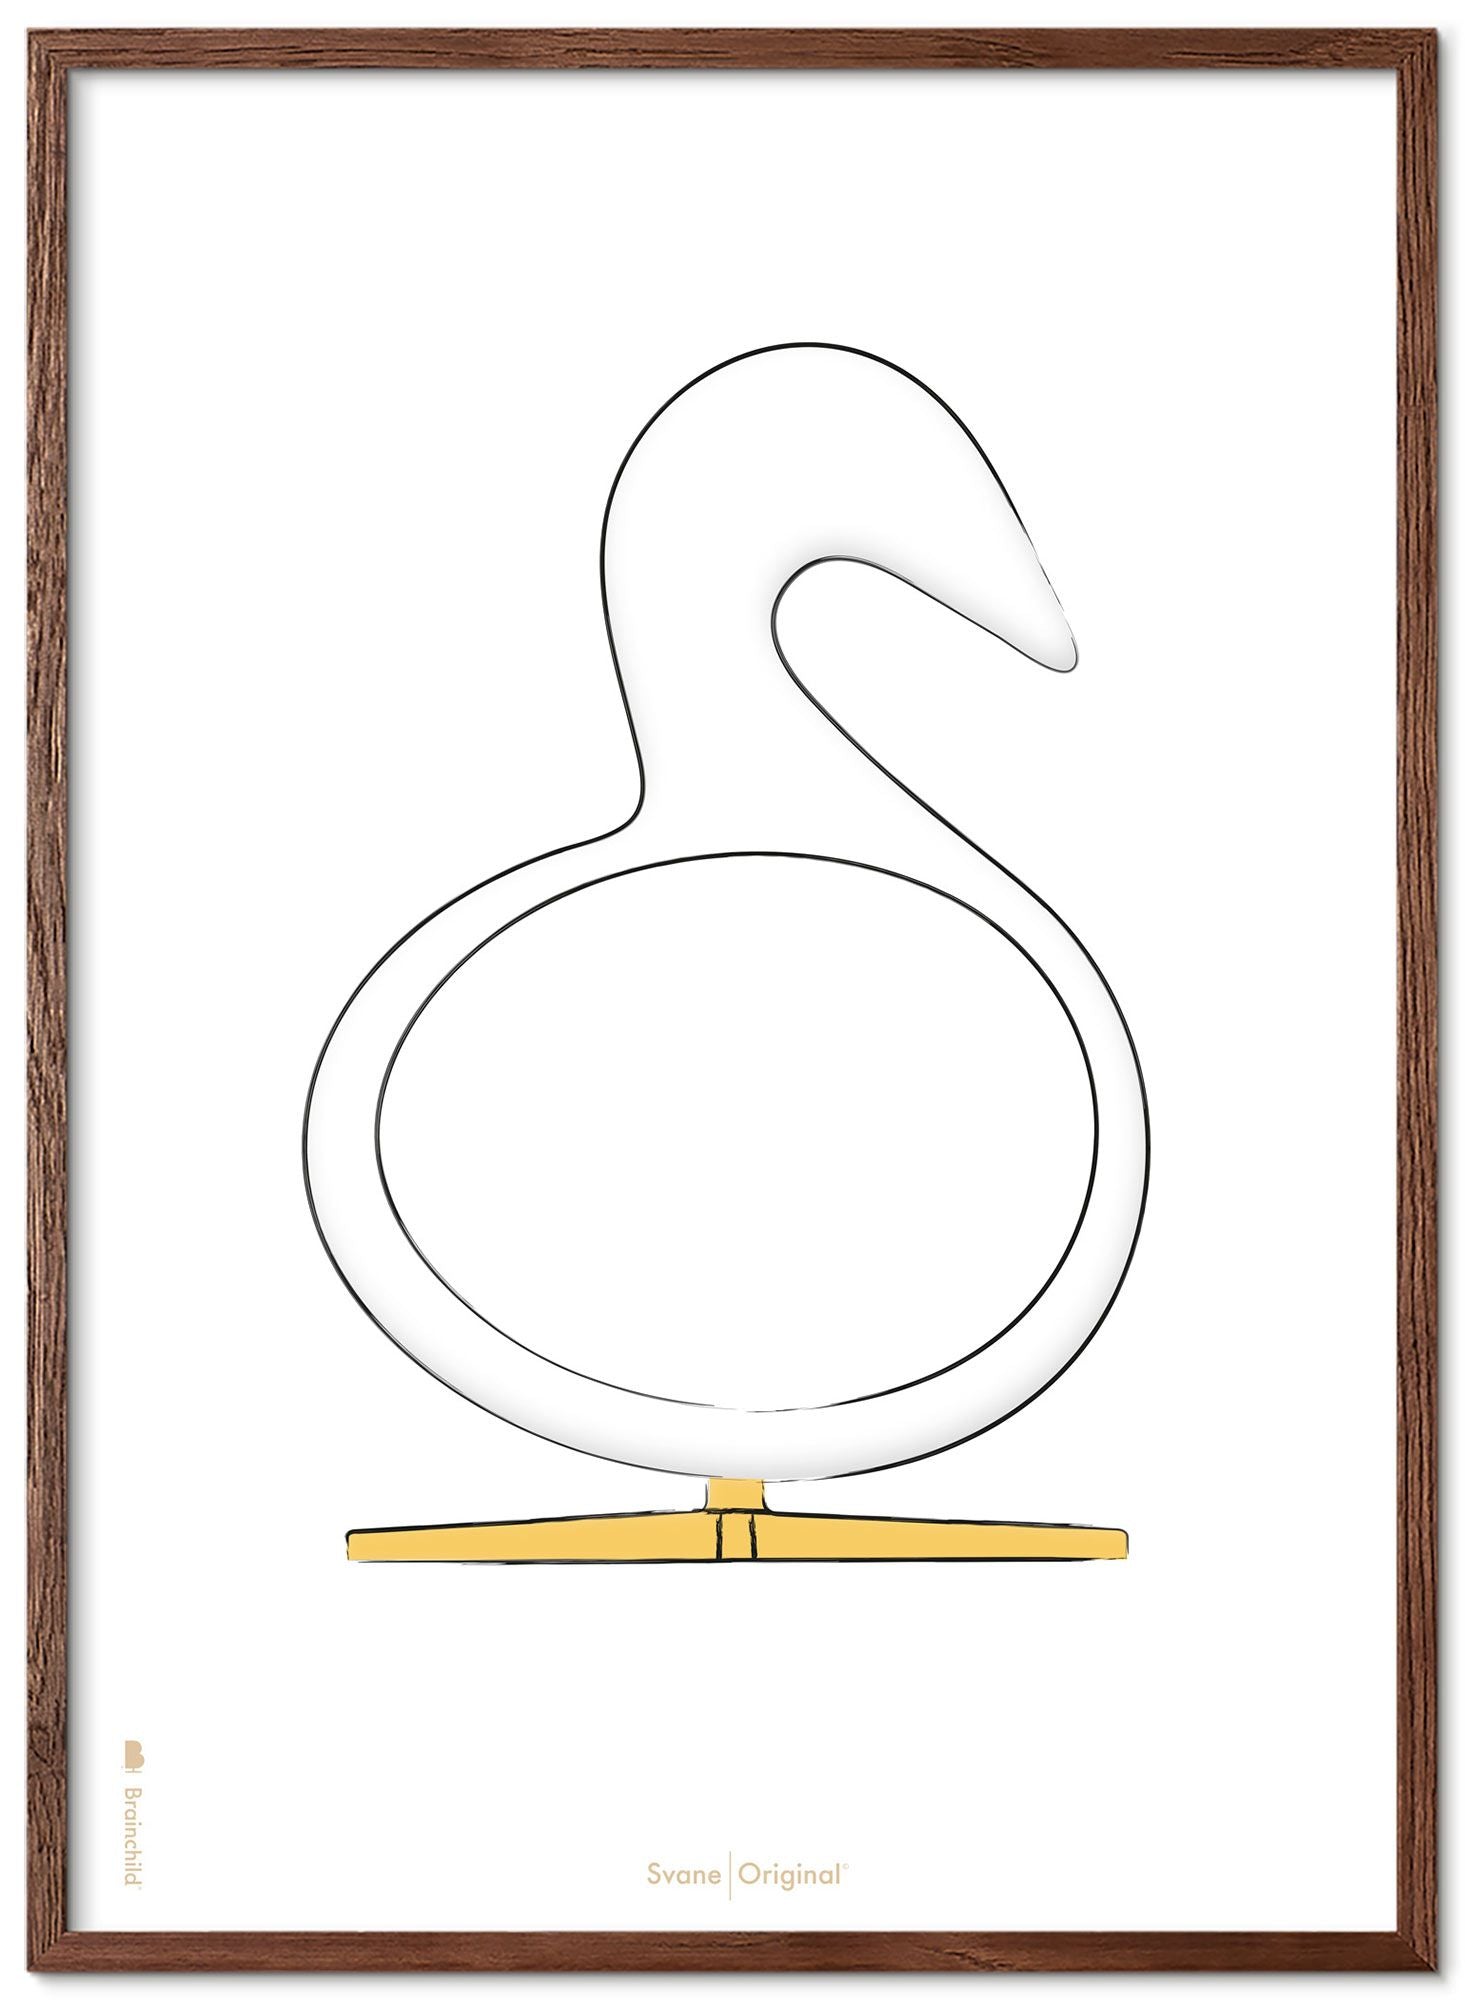 Brainchild Swan Design Sketch Poster Frame Made Of Dark Wood 70x100 Cm, White Background